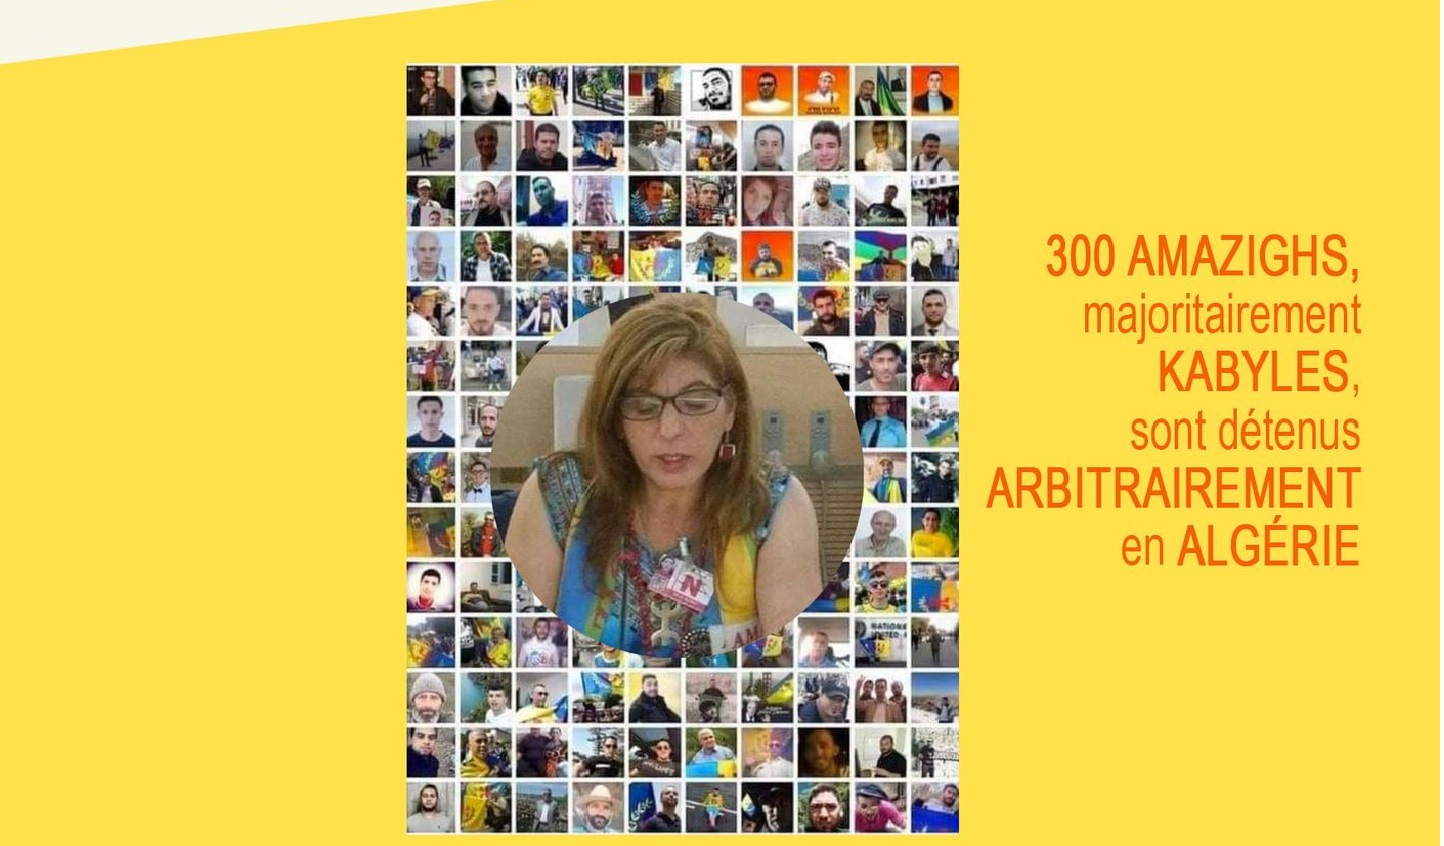 300 سجين سياسي قبائلي  في إضراب عن الطعام،  والمؤتمر الأمازيغي العالمي يدعو إلى التظاهر